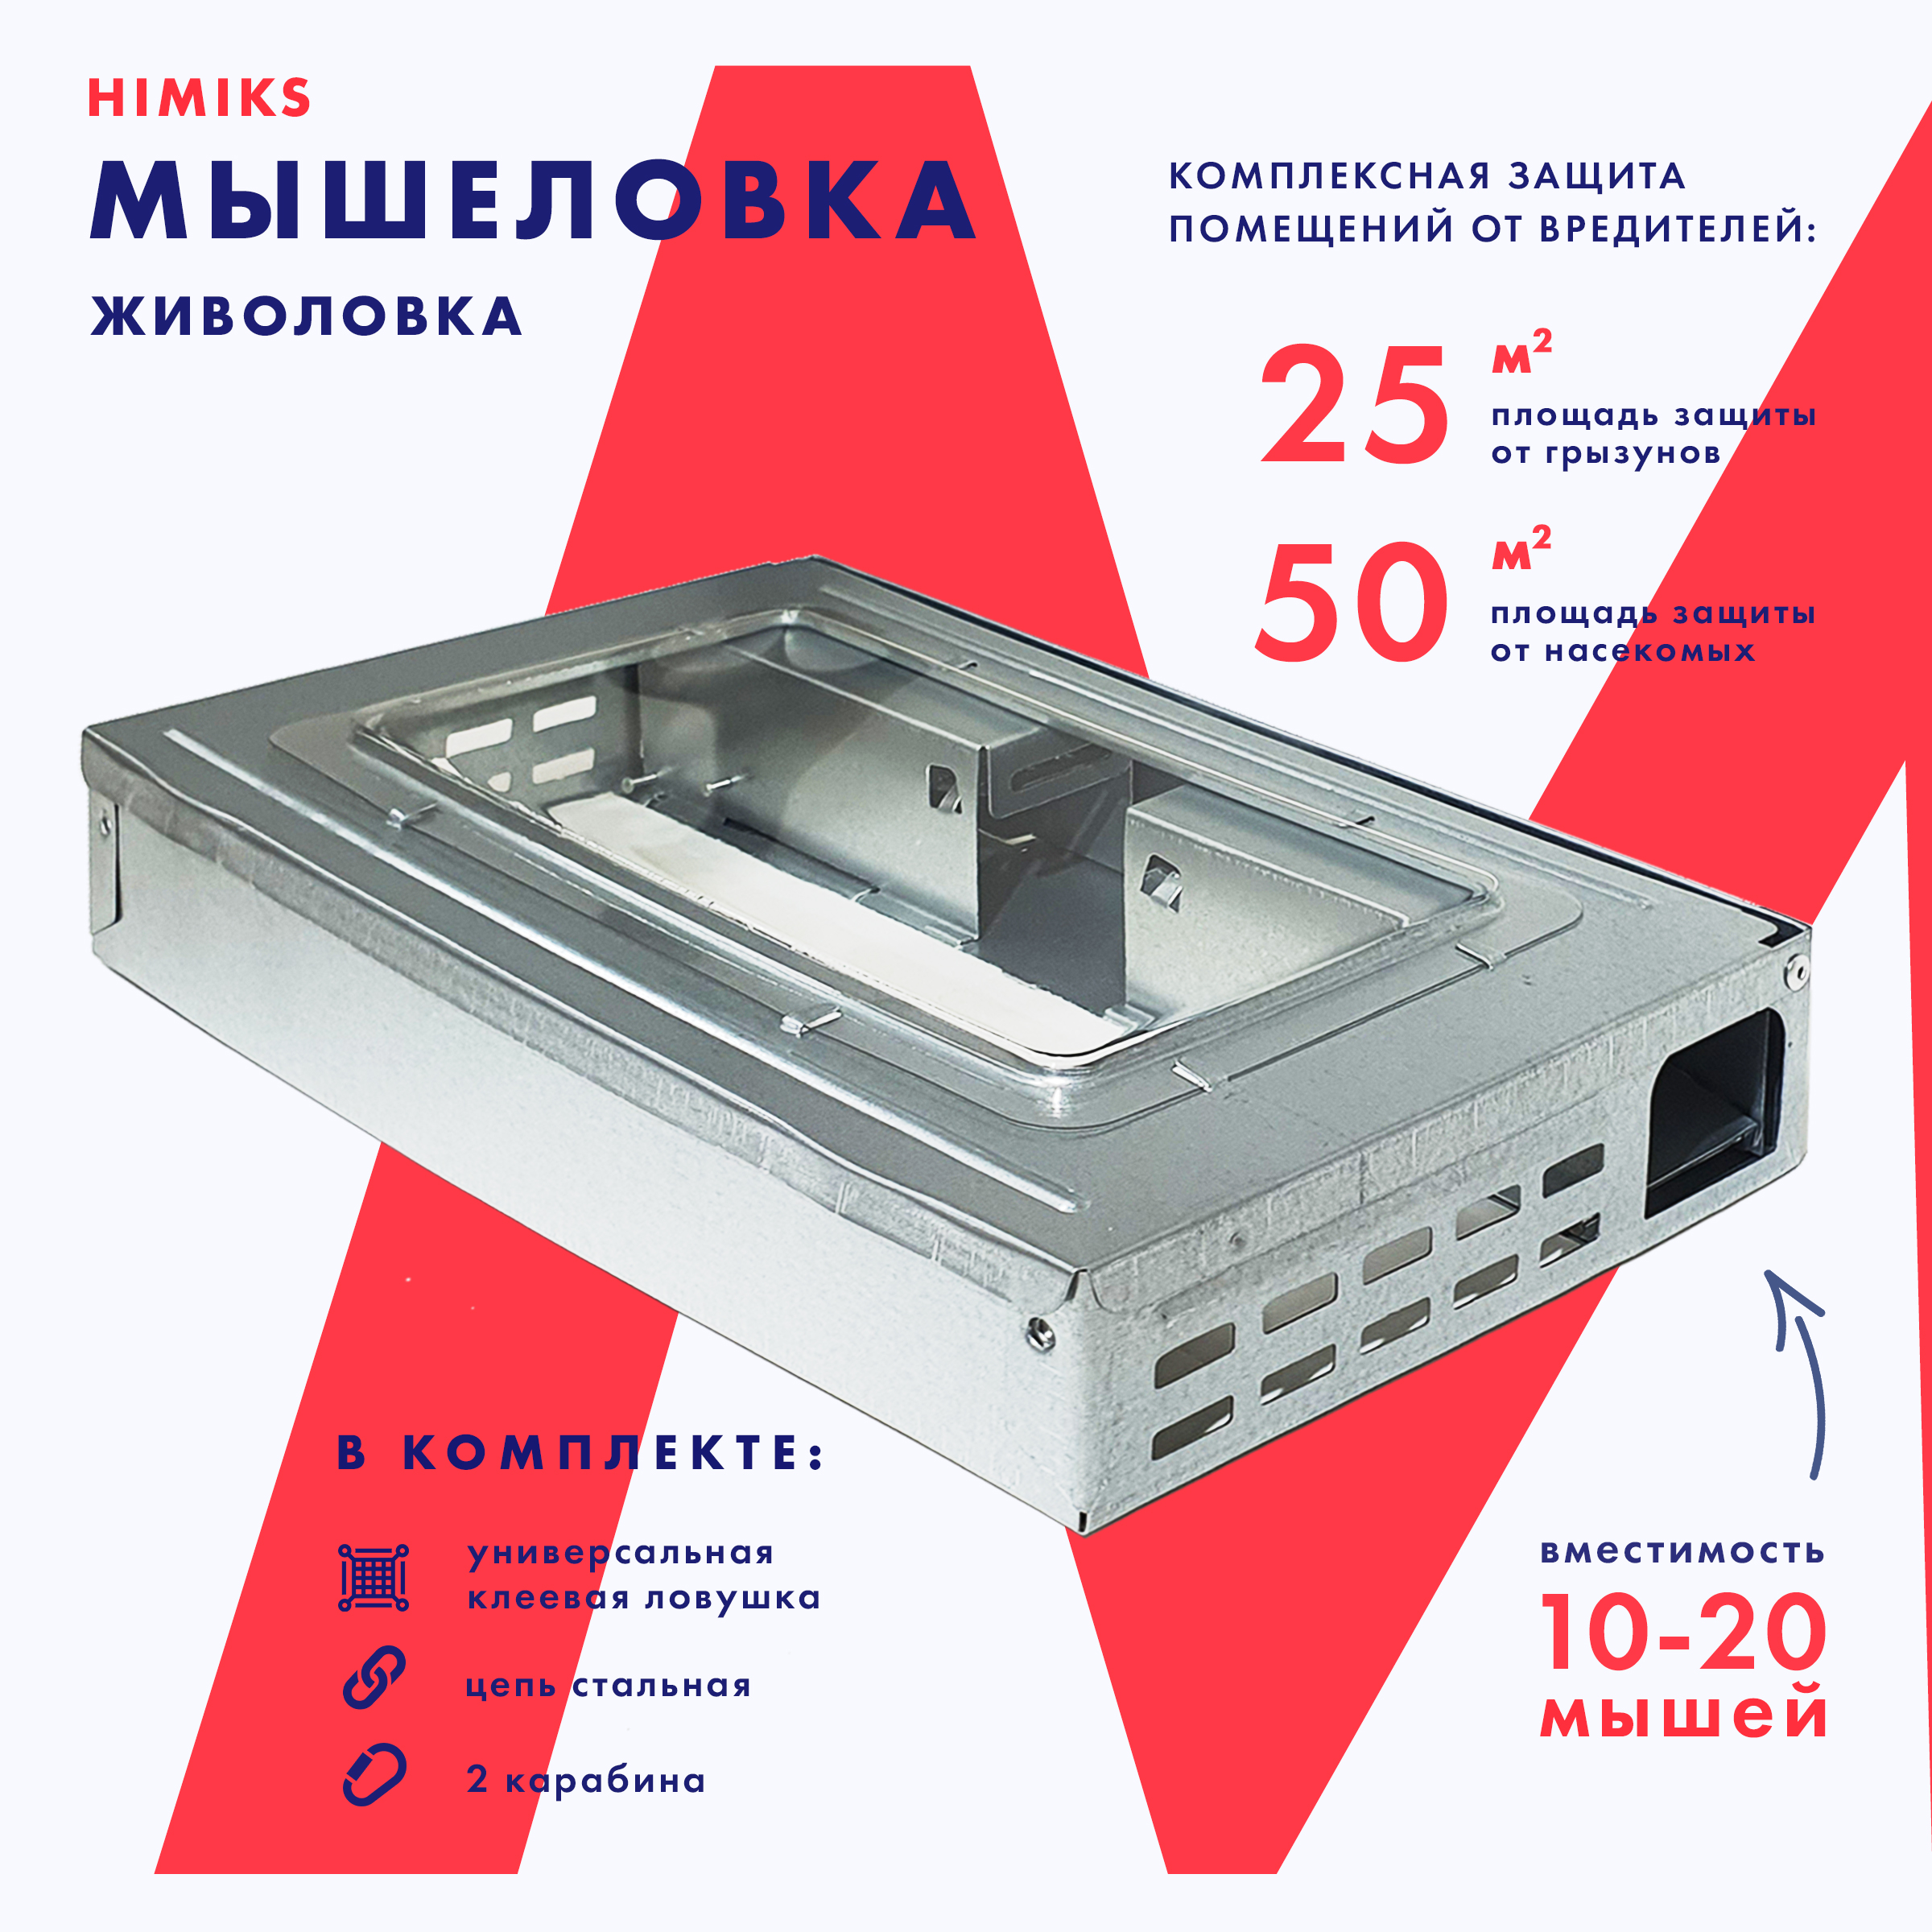 Мышеловка Himiks с клеевой пластиной, Арт. SKU-006-FS-3, 1 шт.